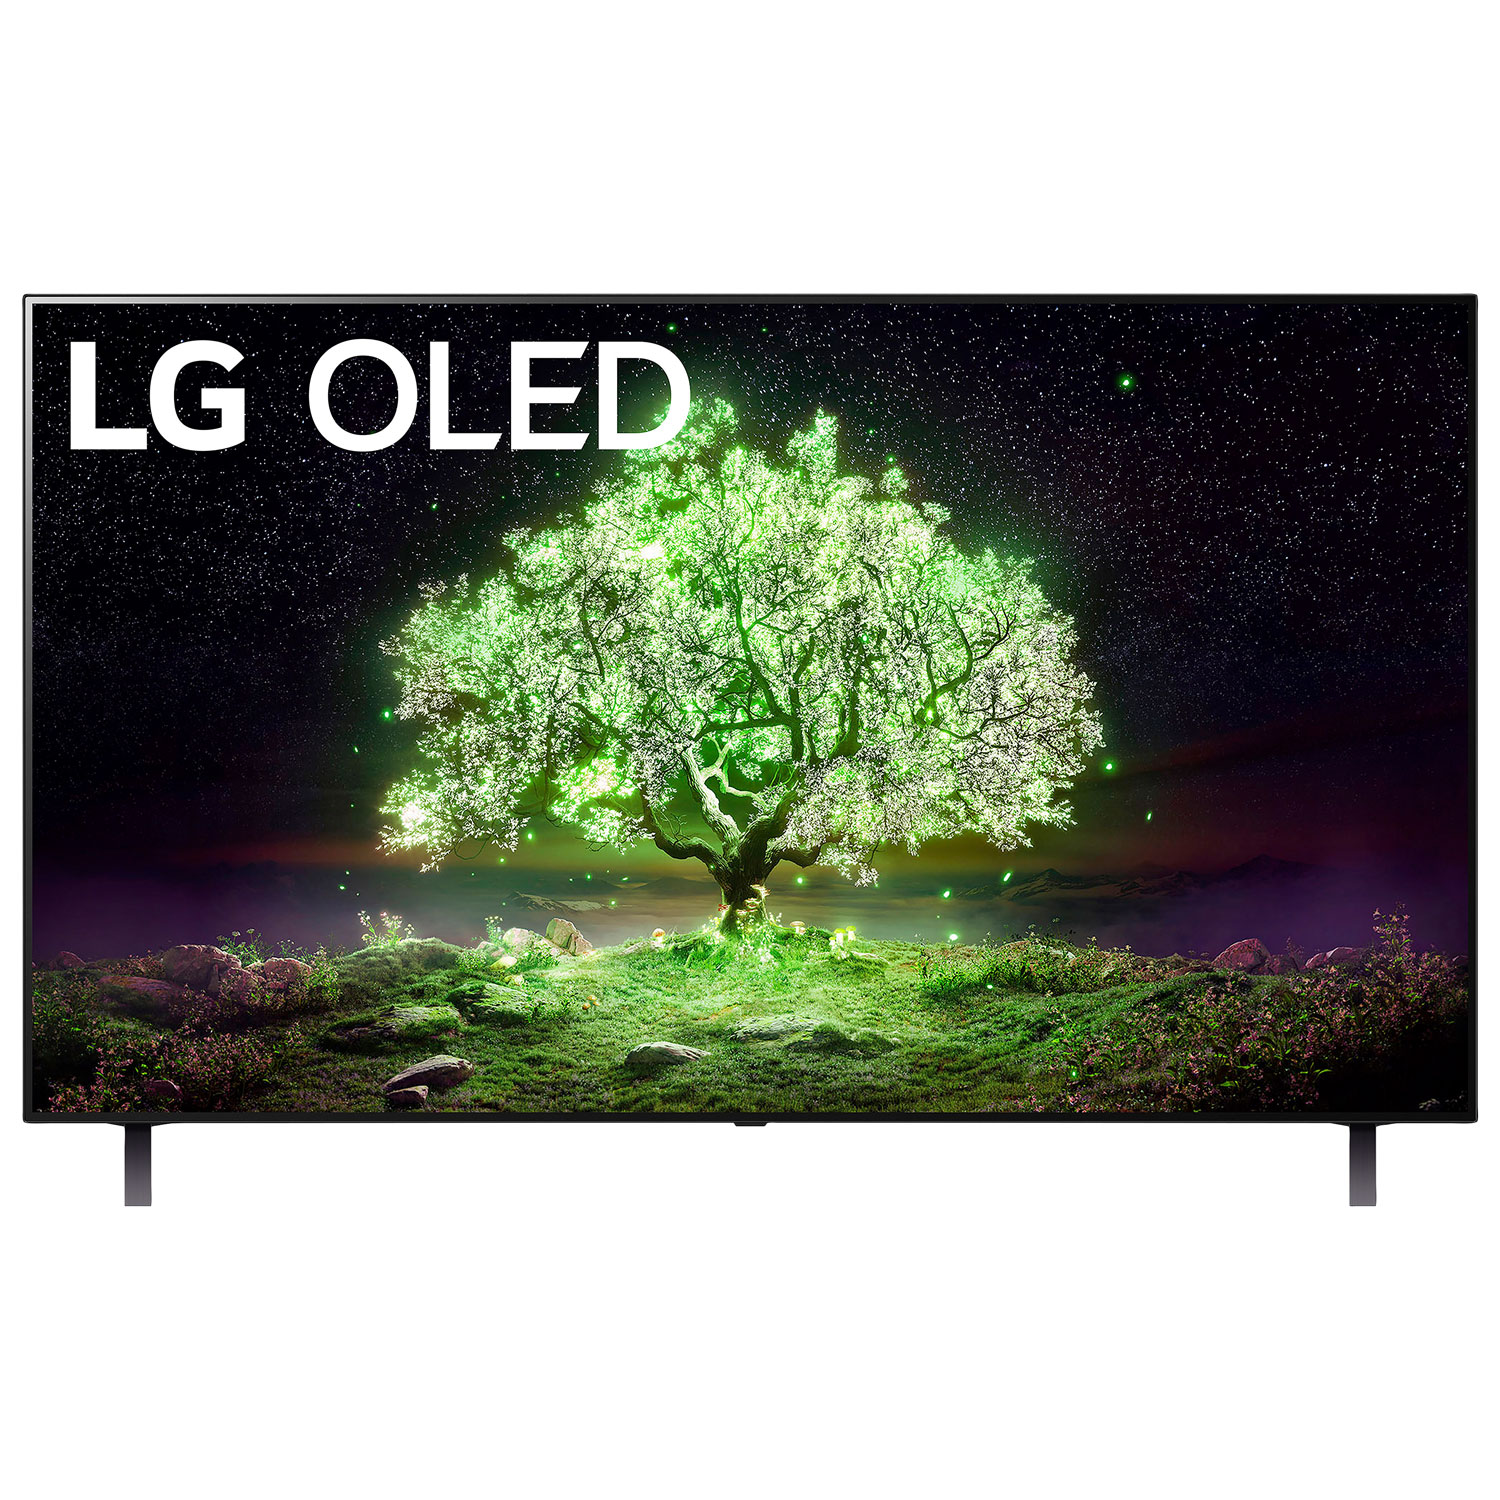 LG 55" 4K UHD HDR OLED webOS Smart TV (OLED55A1PUA) - 2021